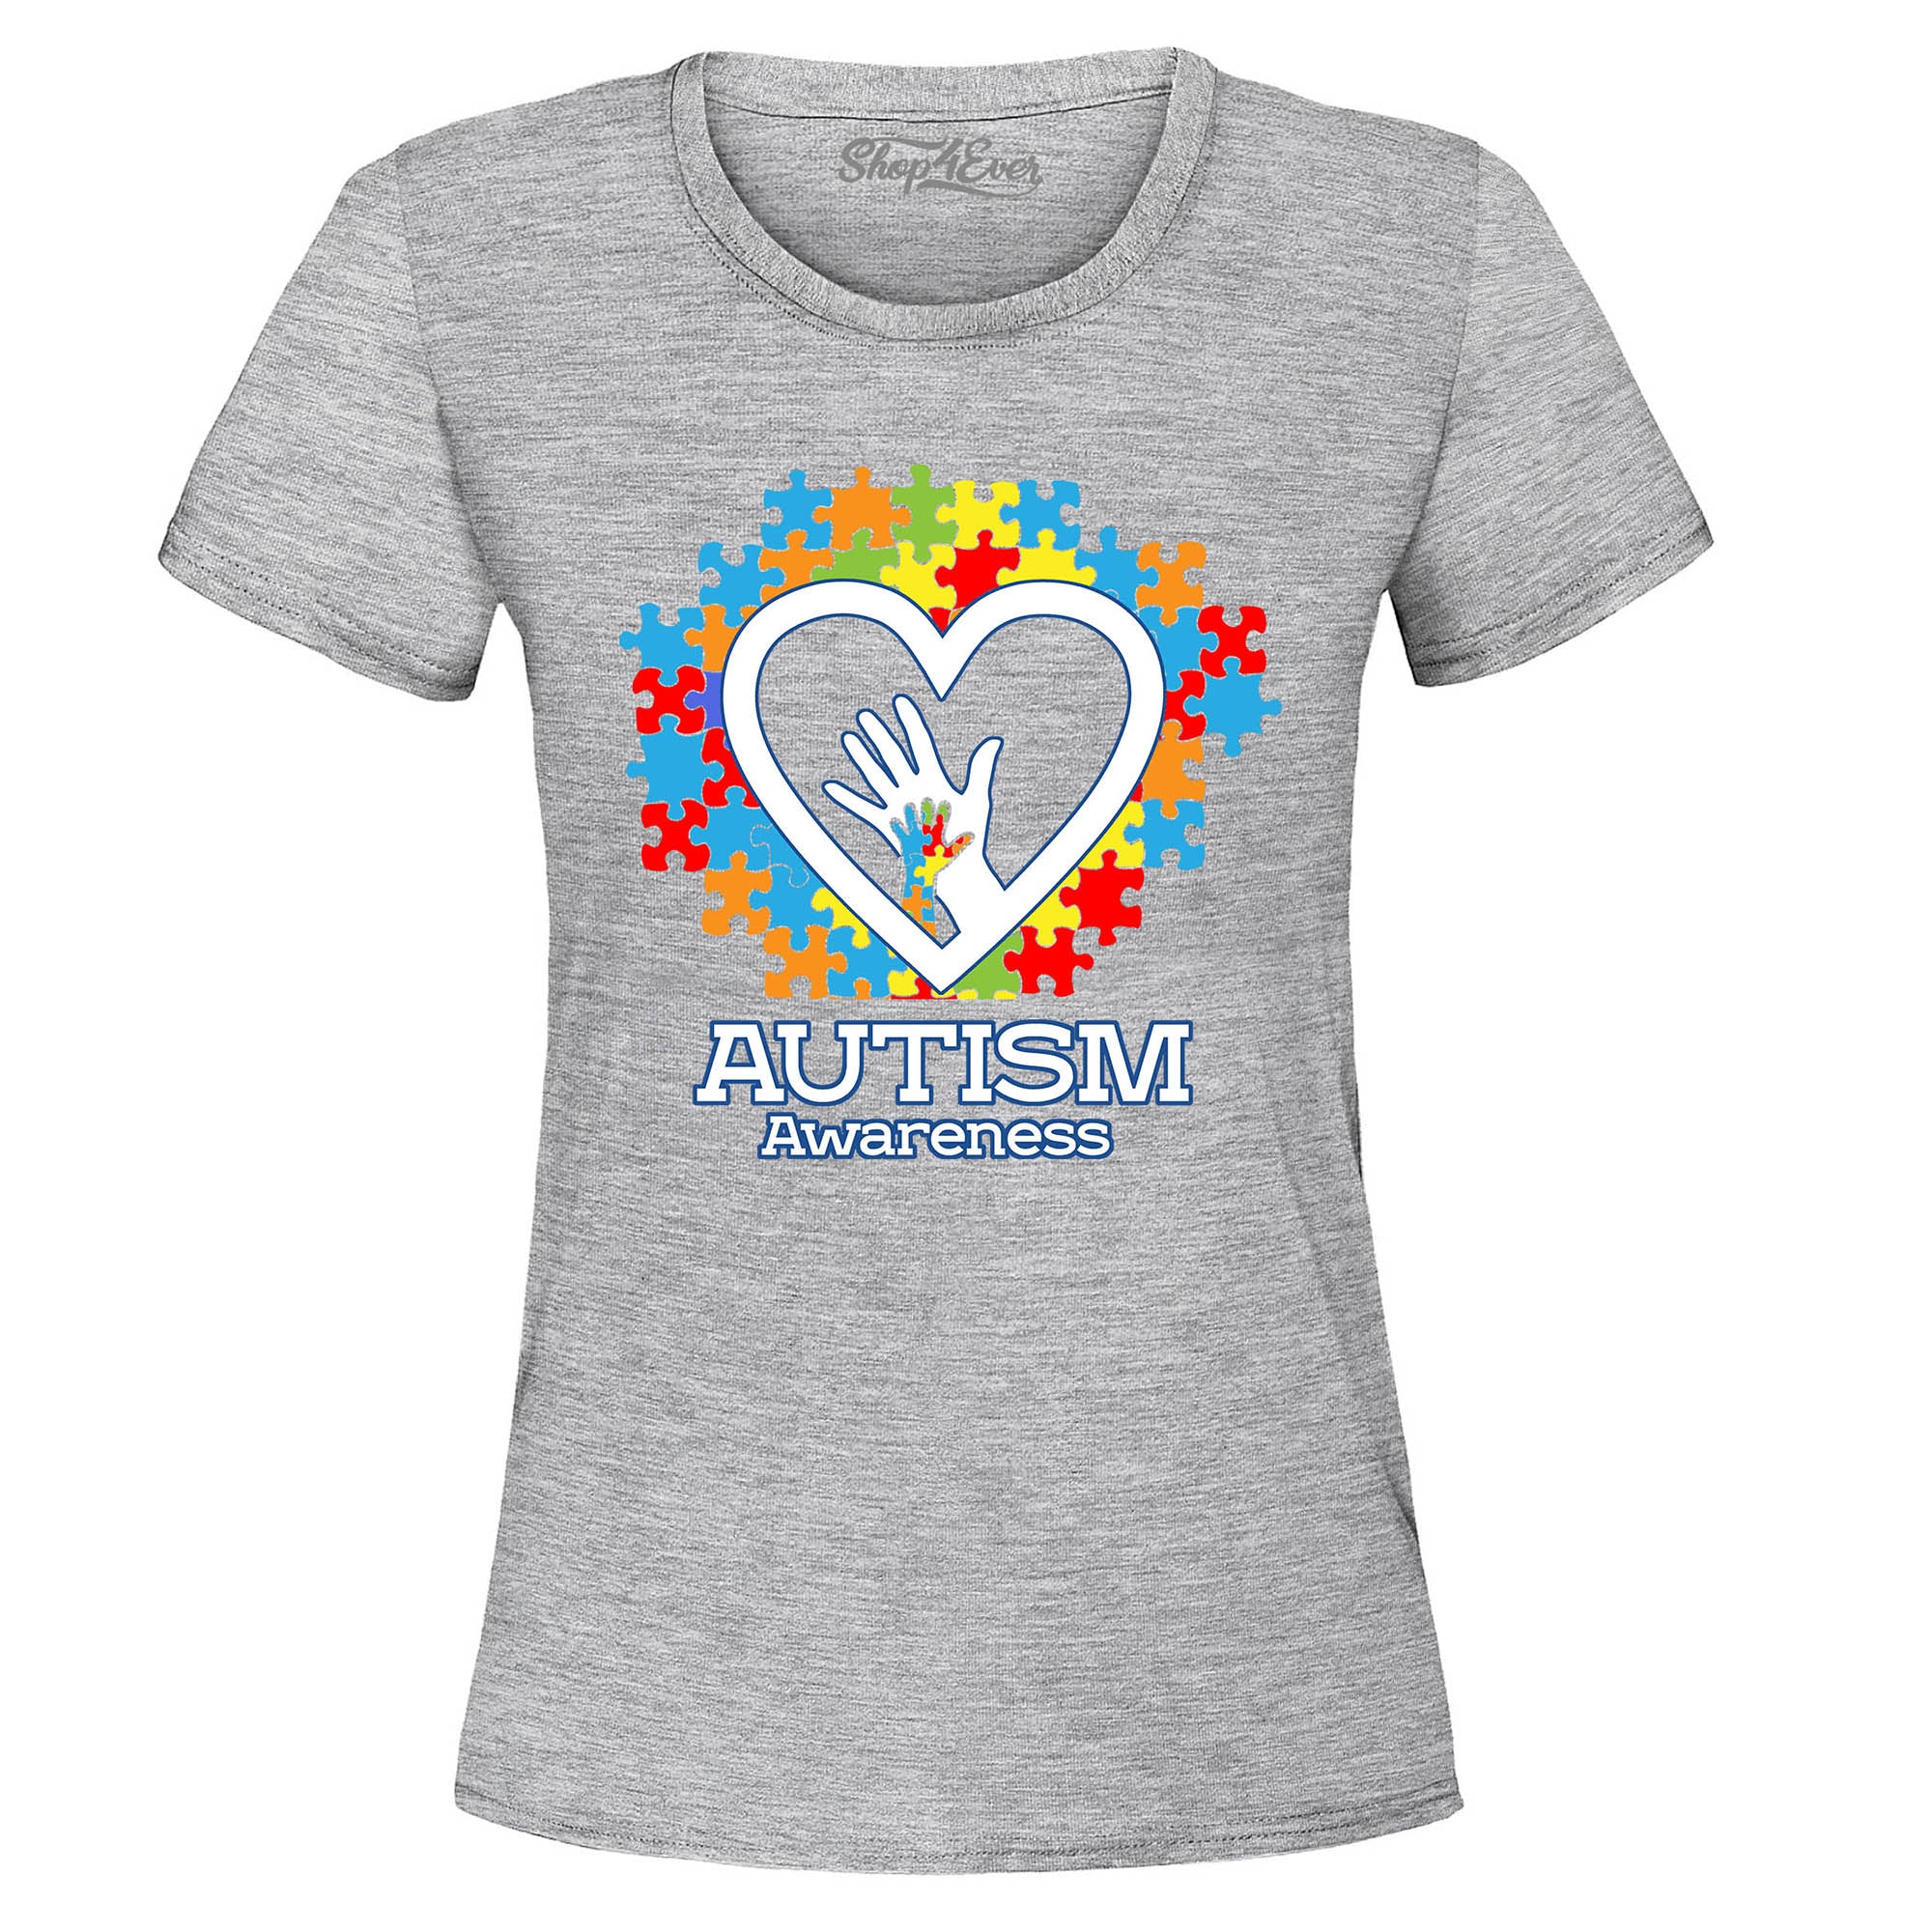 Autism Awareness Hands in Heart Women's T-Shirt